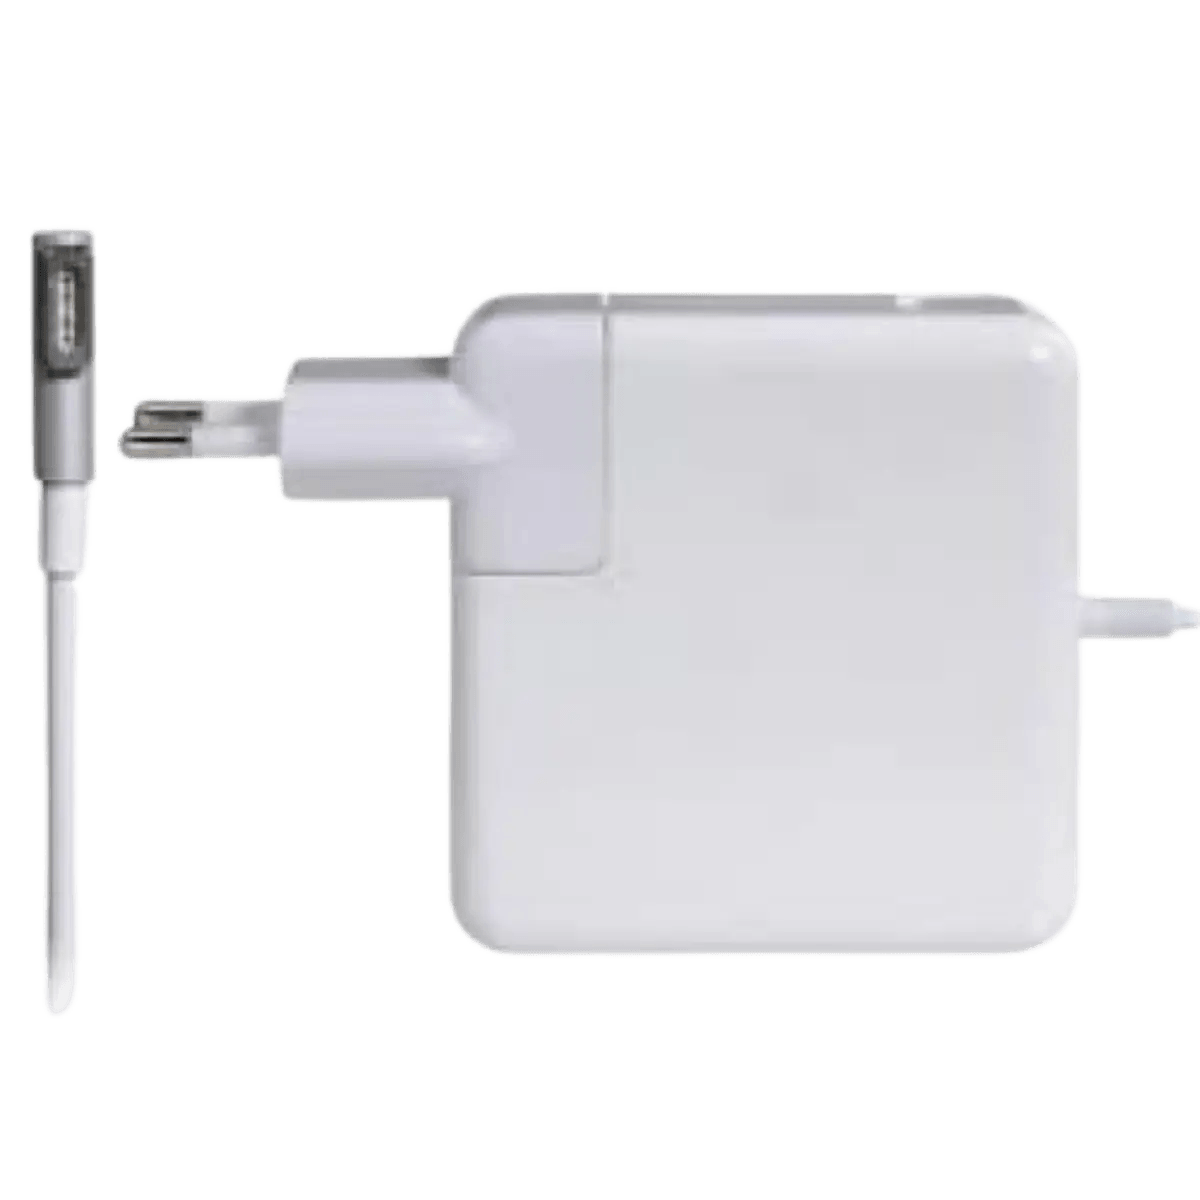 Chargeur et câble d'alimentation PC Km Energy chargeur compatible pour  apple macbook pro - magsafe 1 85w - a1290 - a1286